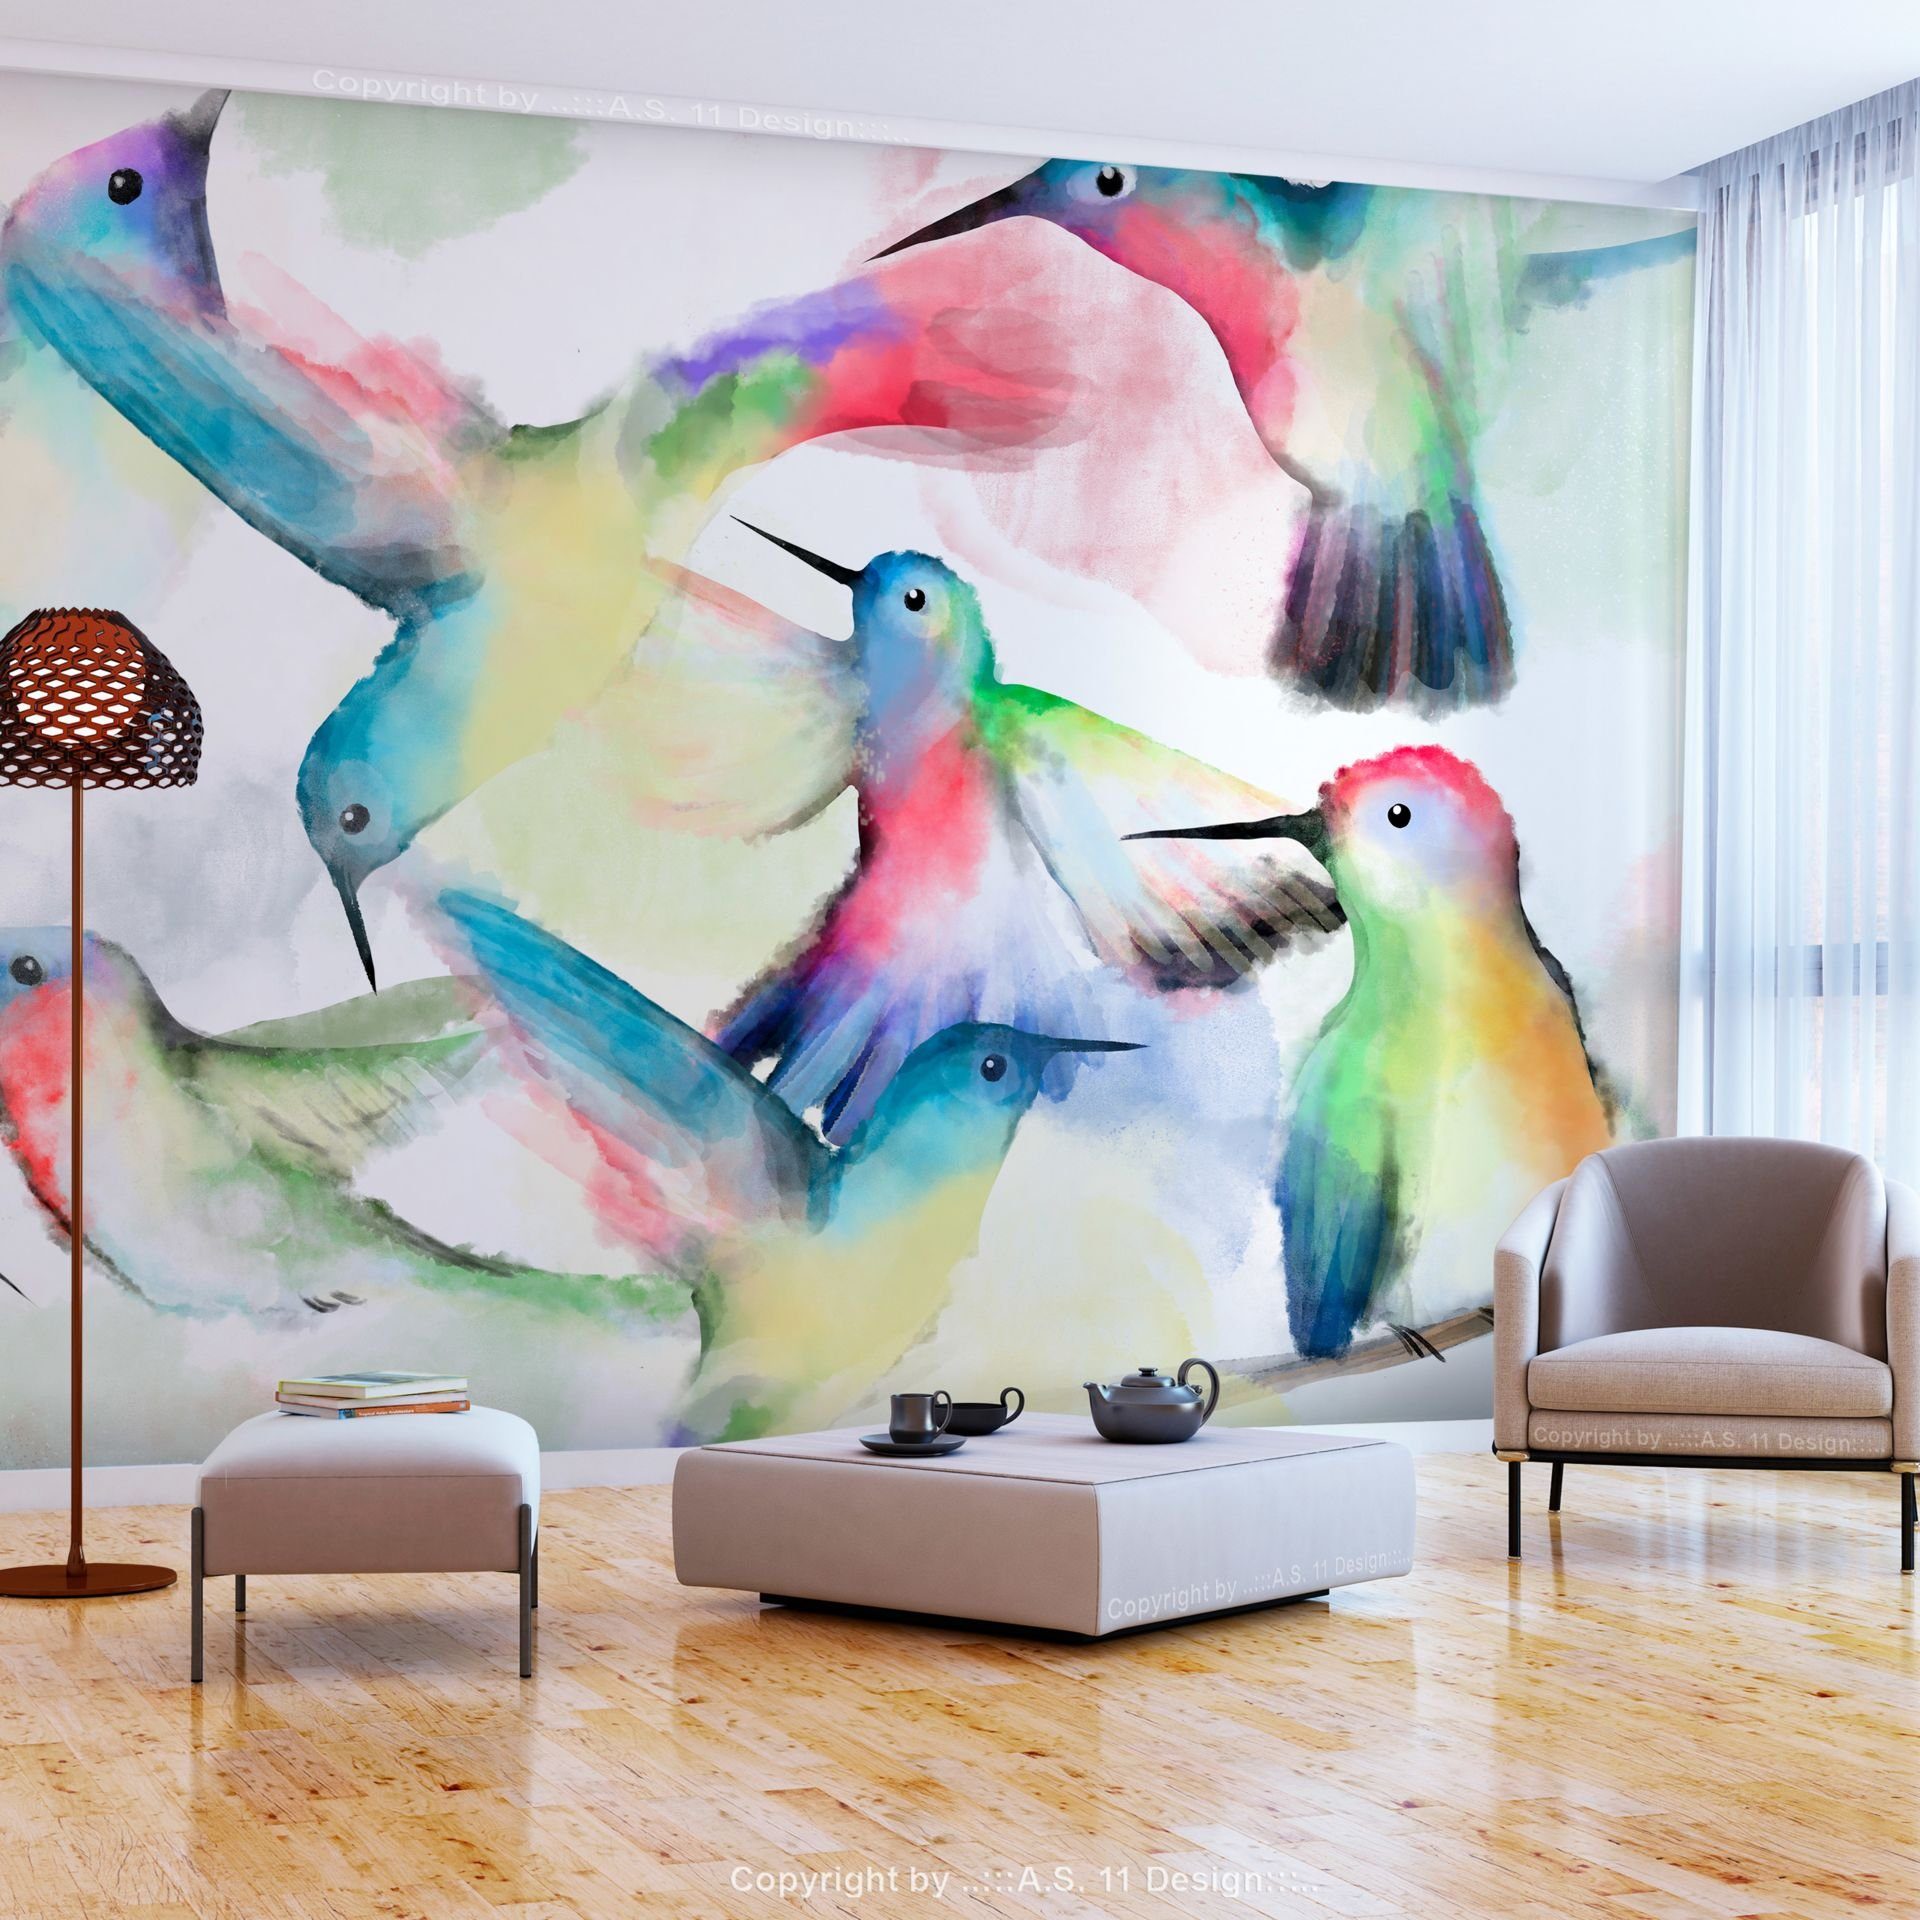 KUNSTLOFT Vliestapete Watercolor Birds 1x0.7 m, halb-matt, lichtbeständige Design Tapete